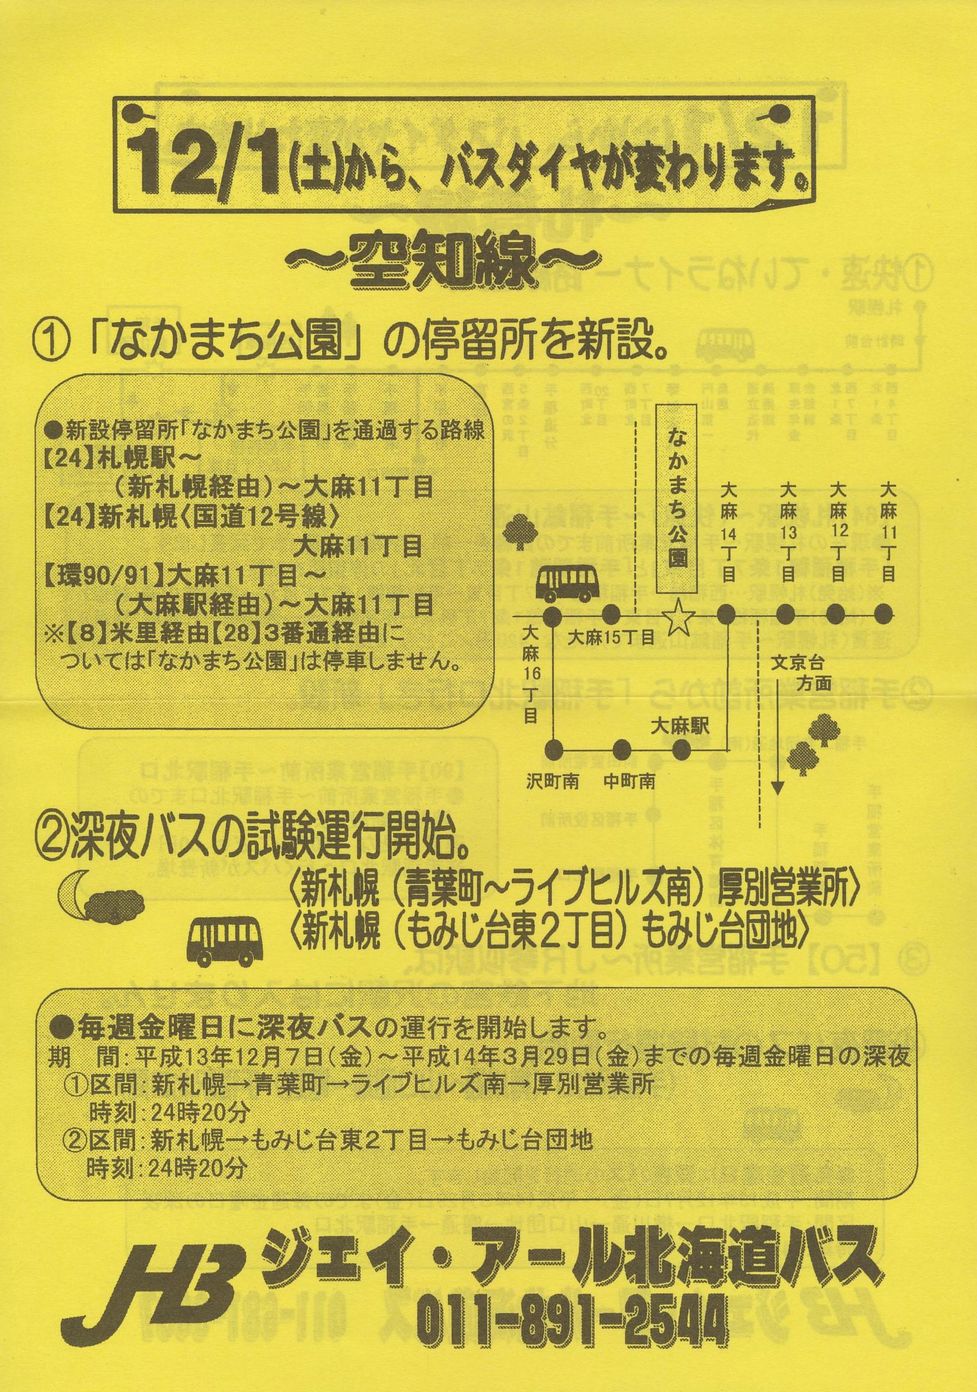 2001-12-01改正_ジェイ・アール北海道バス_札樽線・空知線ダイヤ改正チラシ裏面